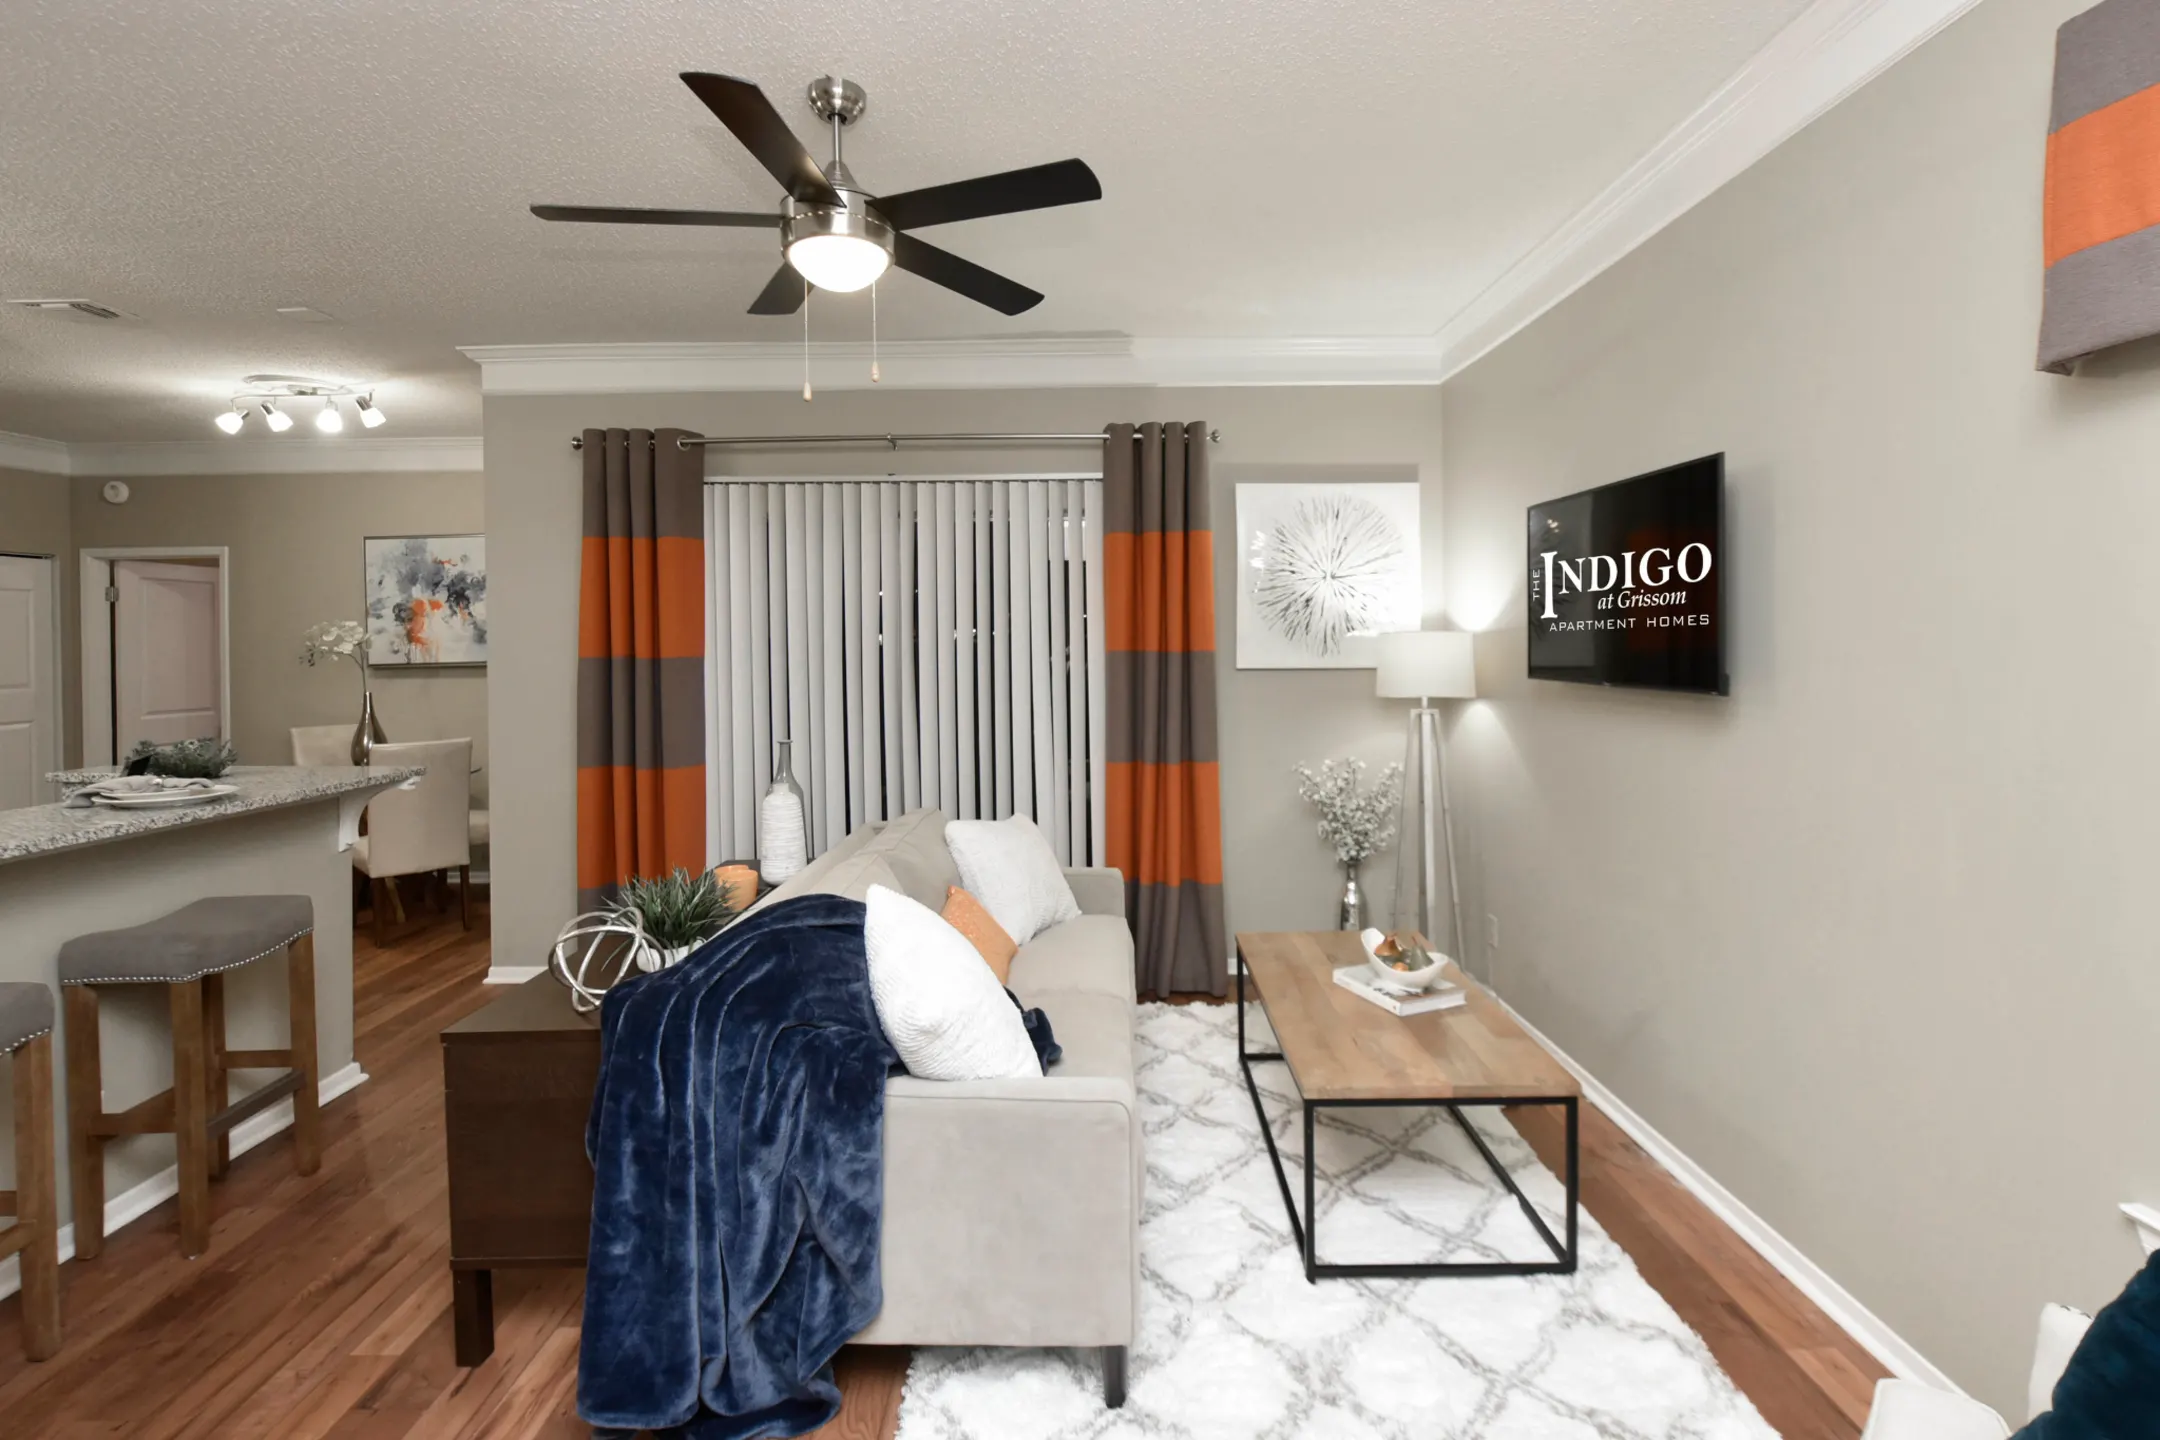 Bedroom - The Indigo at Grissom - Huntsville, AL